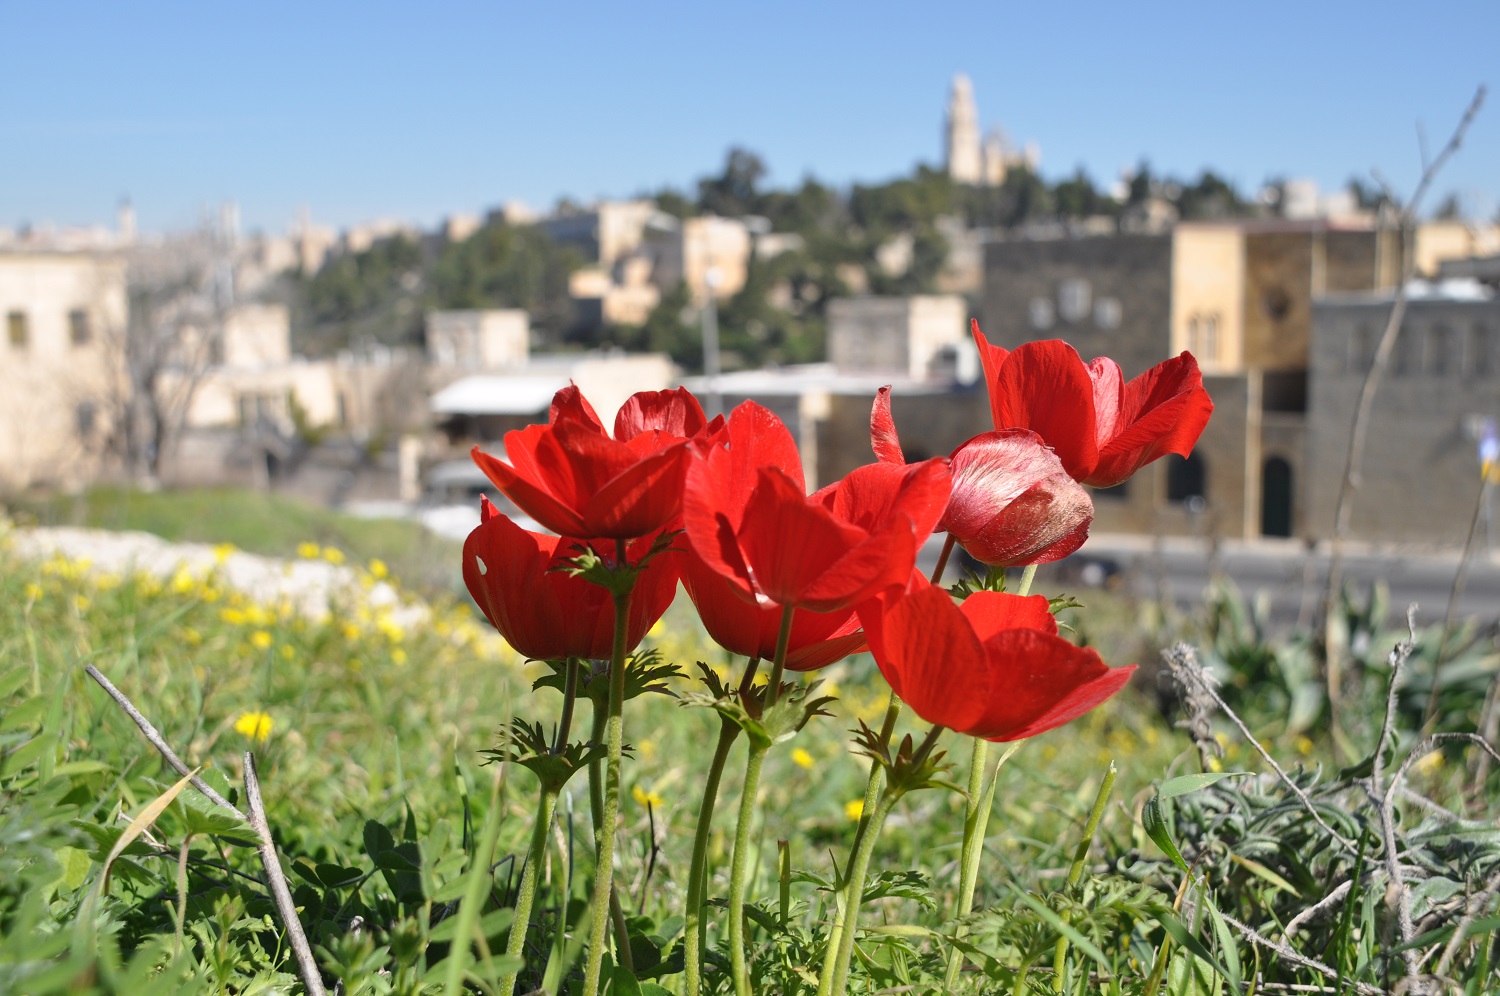 כלניות פורחות בגבעת התנ״ך בירושלים